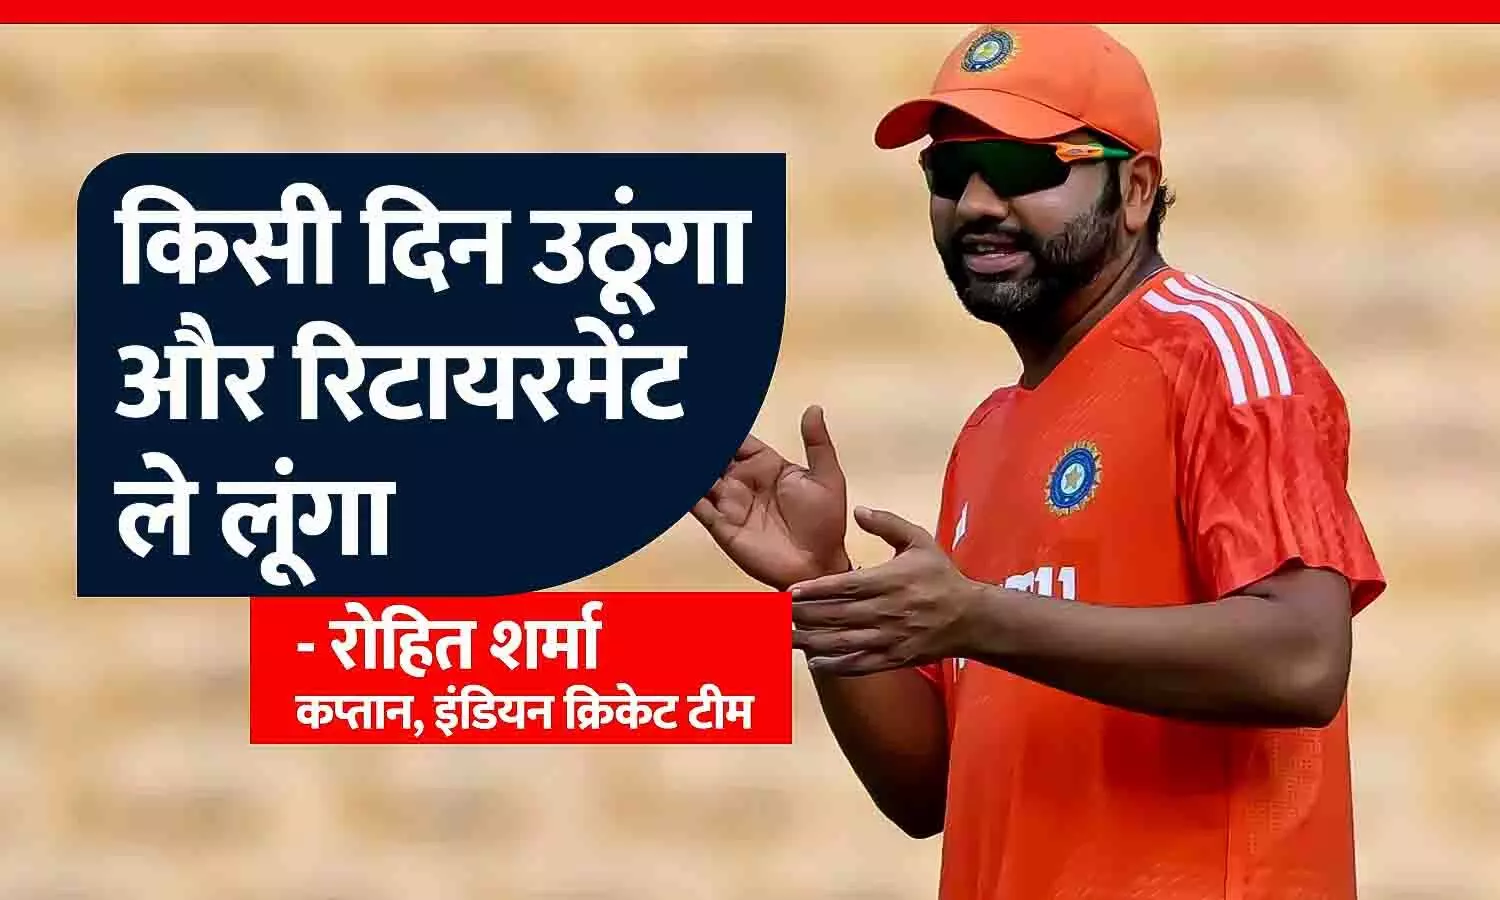 टीम इंडिया के कप्तान रोहित शर्मा बोले- किसी दिन उठूंगा और रिटायरमेंट ले लूंगा, खिलाड़ियों को फियरलेस क्रिकेट खेलना जरूरी